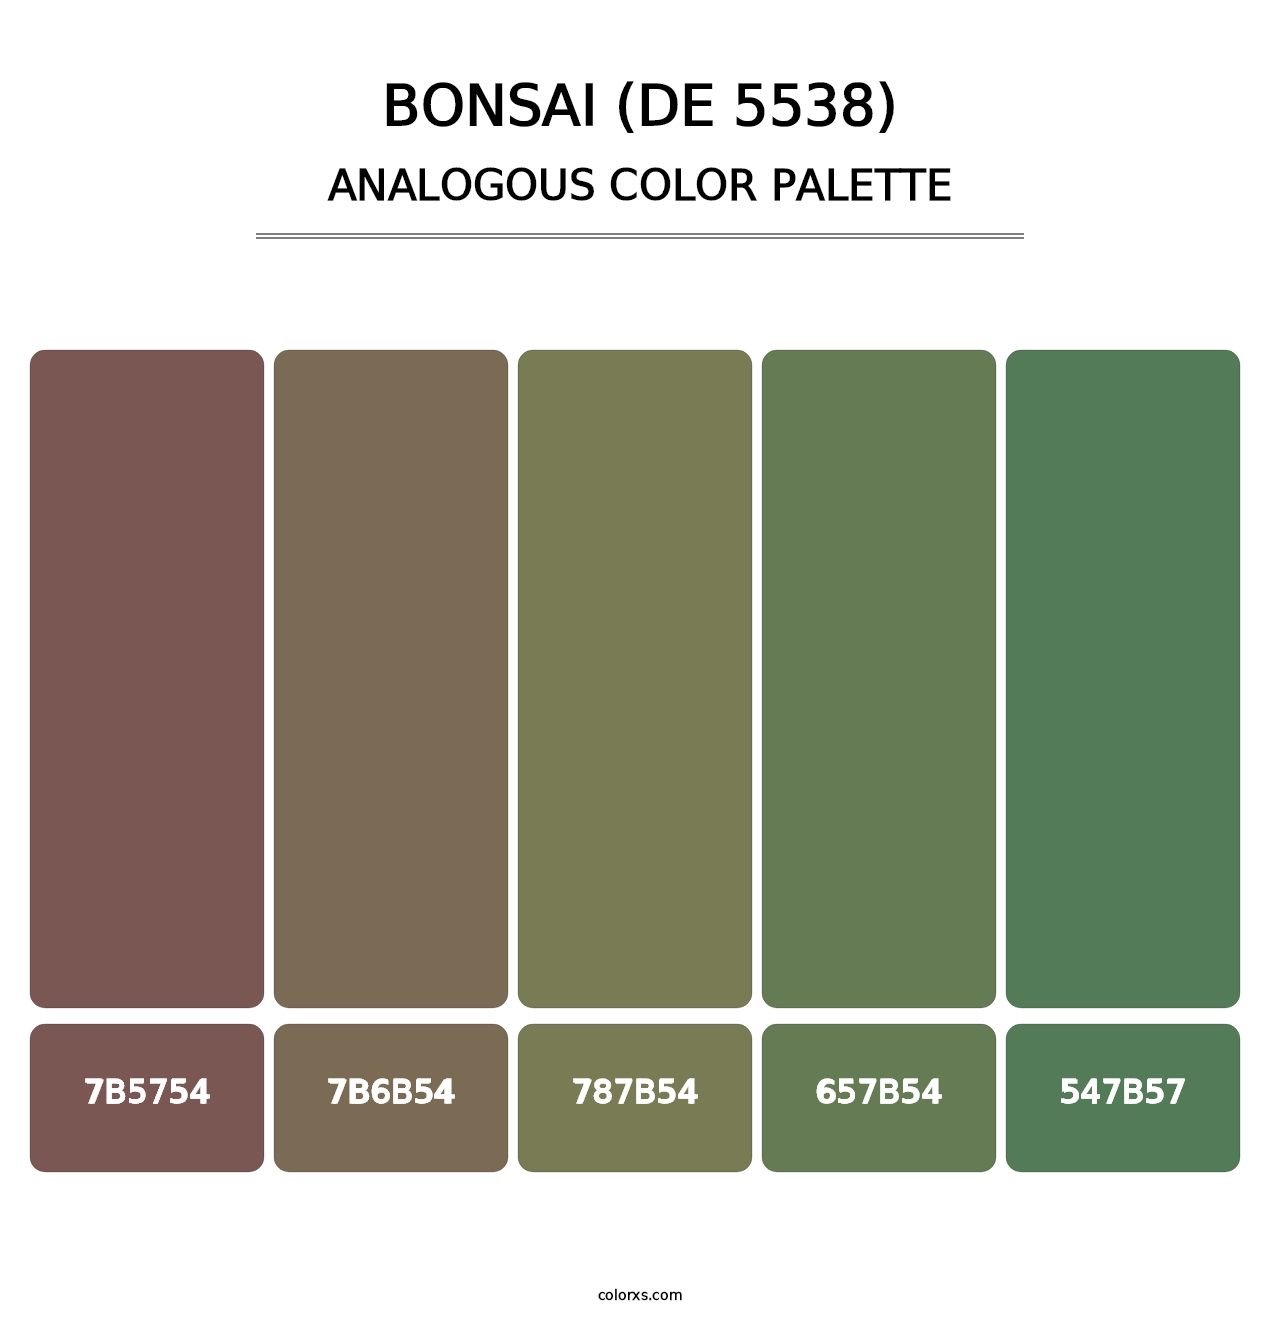 Bonsai (DE 5538) - Analogous Color Palette